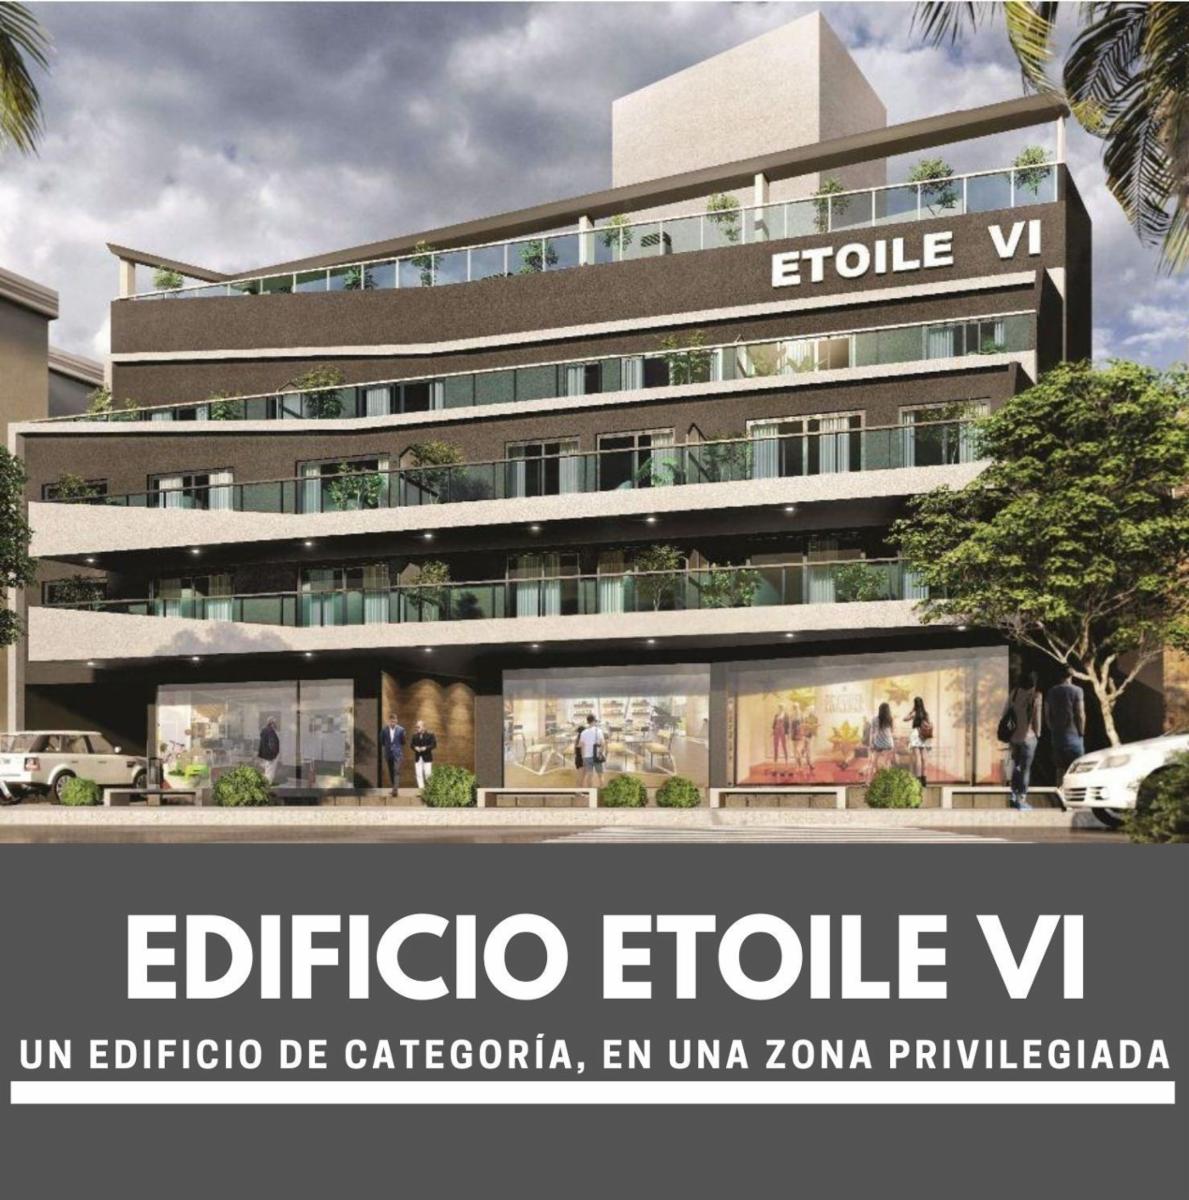 Nuevo  EDIFICIO ETOLE VI EN VILLA CARLOS PAZ. PRECIOS Y UNIDADES EN OPORTUNIDAD - PRONTA ENTREGA